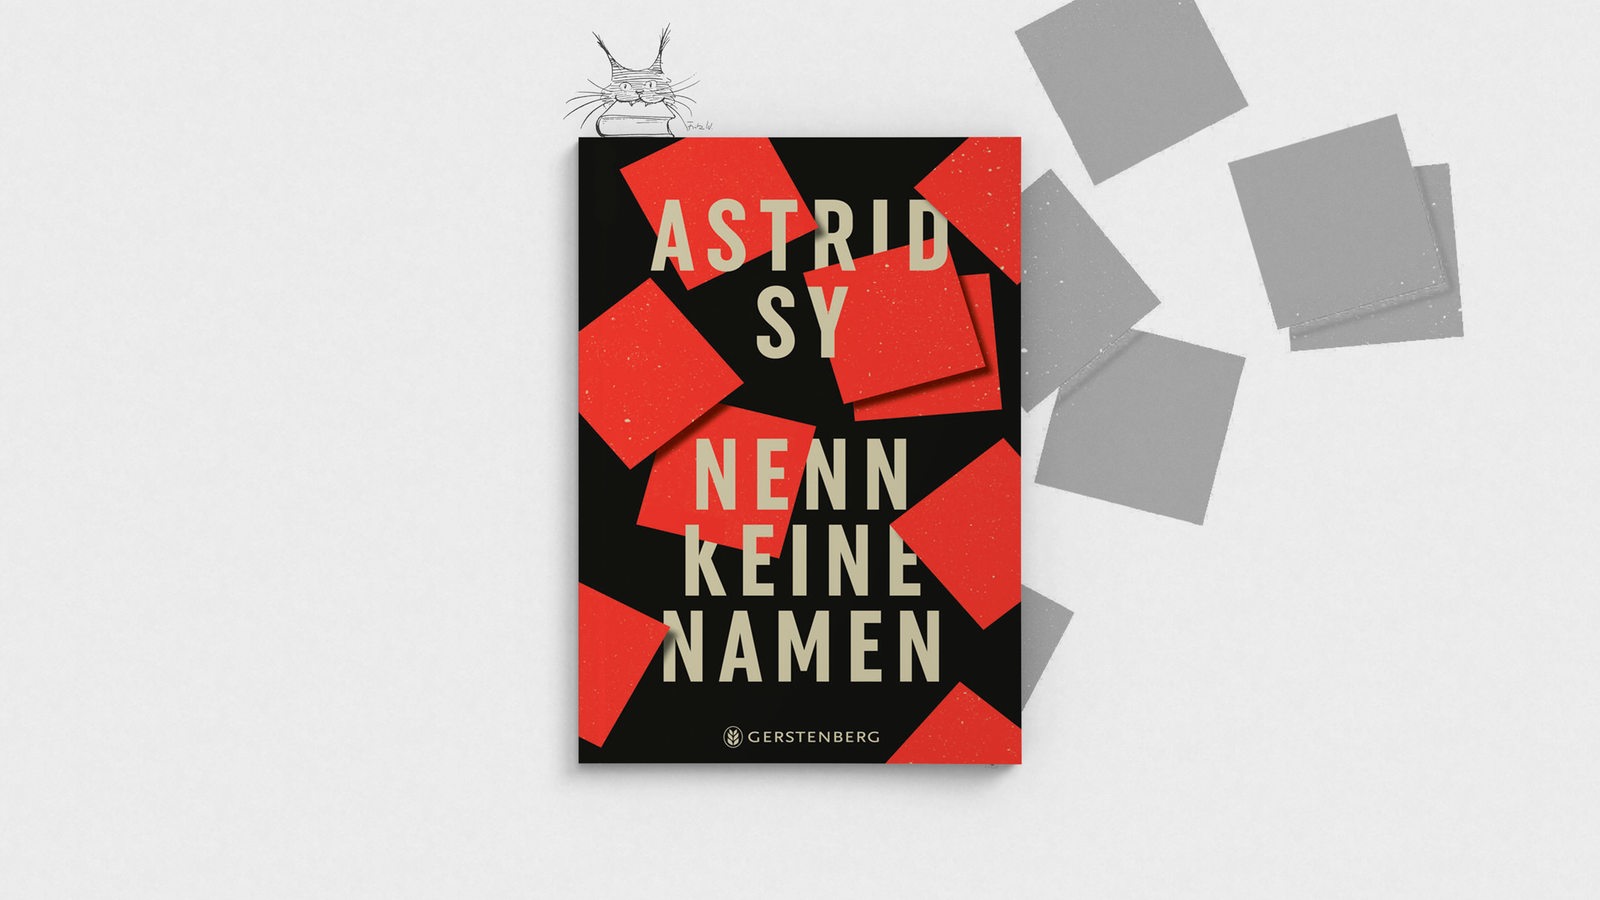 Buchcover "Nenn keine Namen" von Astrid Sy, als Luchs des Monats gestaltet